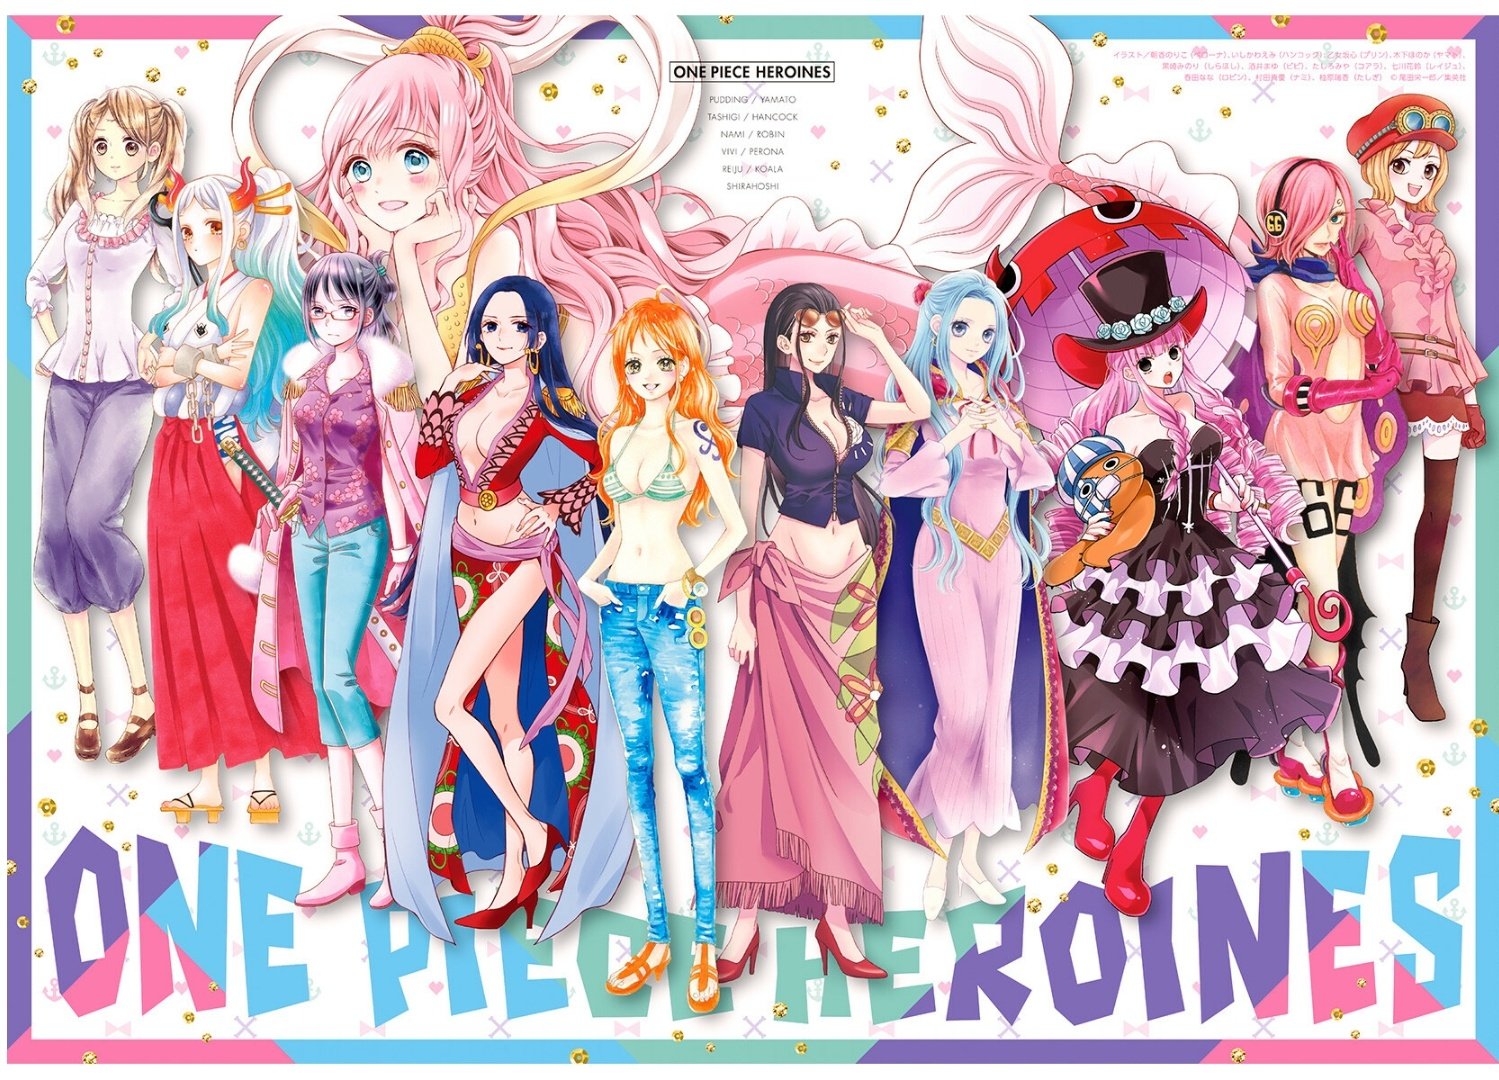 Nếu bạn là một fan của tiểu thuyết và các nhân vật nữ mạnh mẽ, thì bạn không thể bỏ qua các nhân vật nữ của One Piece. Xem hình ảnh và khám phá những người hùng nữ đáng kính trong series này.